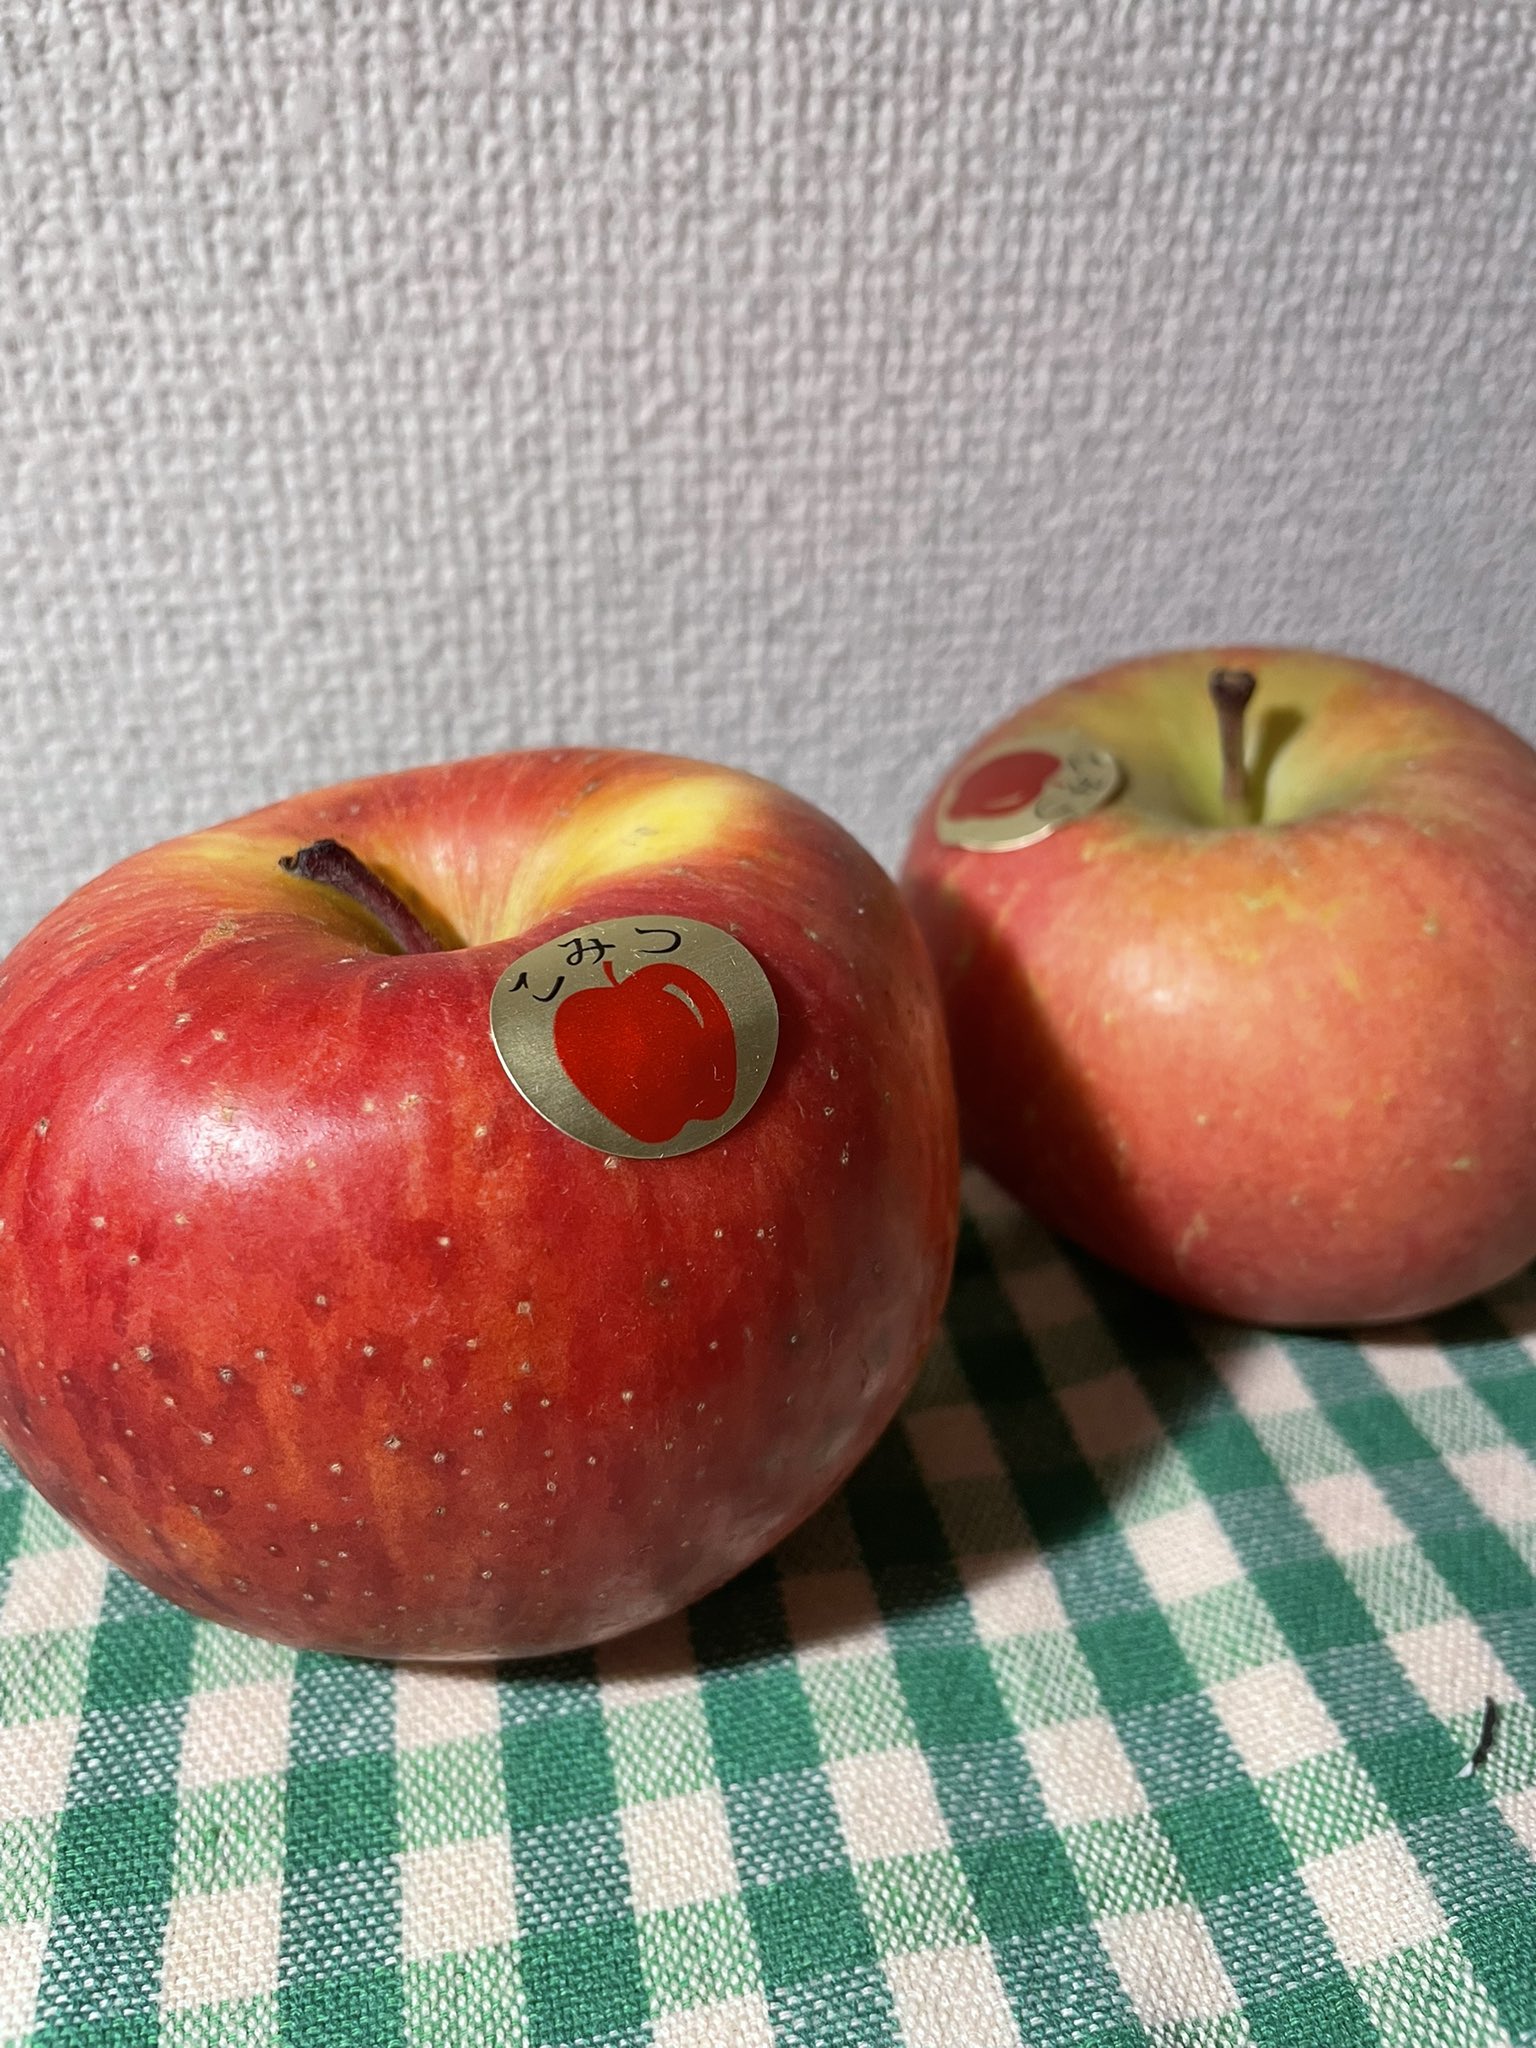 姫林檎よりは大きいけれど普通のリンゴよりは小さい Twitter Search Twitter